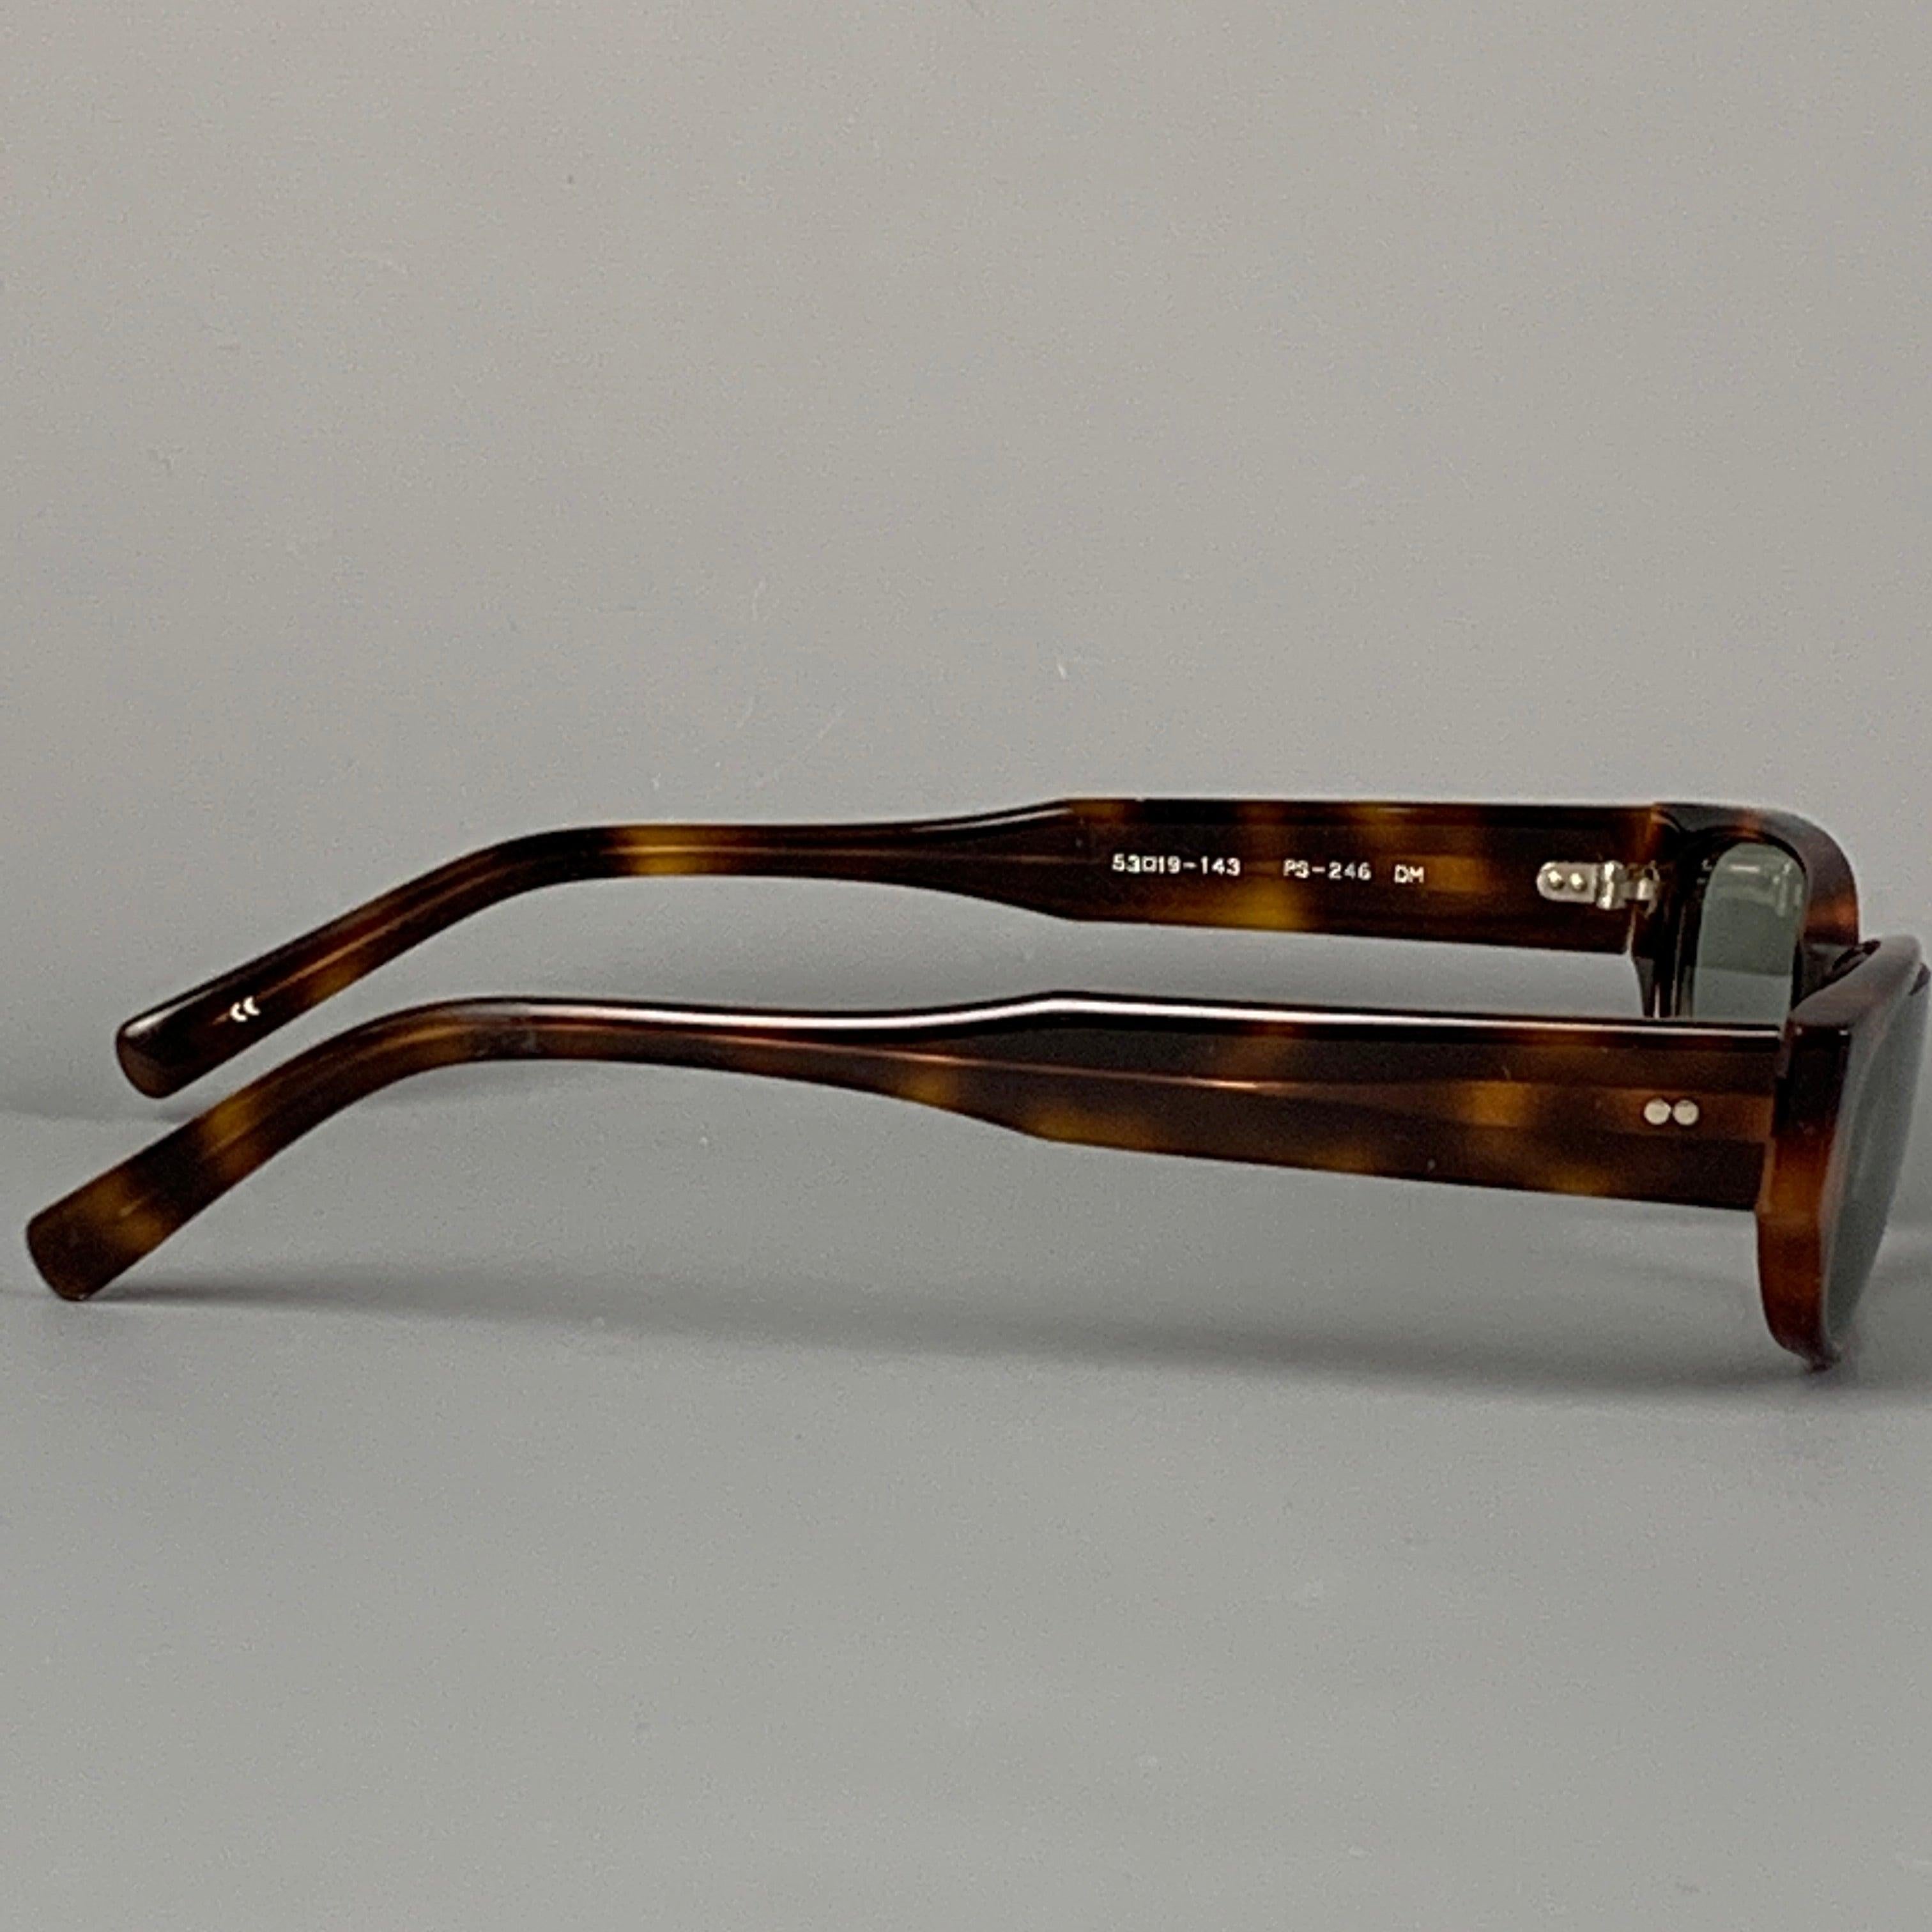 PAUL SMITH Sonnenbrille aus braunem Schildpatt-Acetat mit getönten Gläsern. Hergestellt in Japan.
Gut
Gebrauchtes Zustand. 

Markiert:   53-19-143 PS-246 DM  

Abmessungen: 
  Länge: 14 cm. Höhe: 3 cm.
  
  
 
Referenz: 81965
Kategorie: